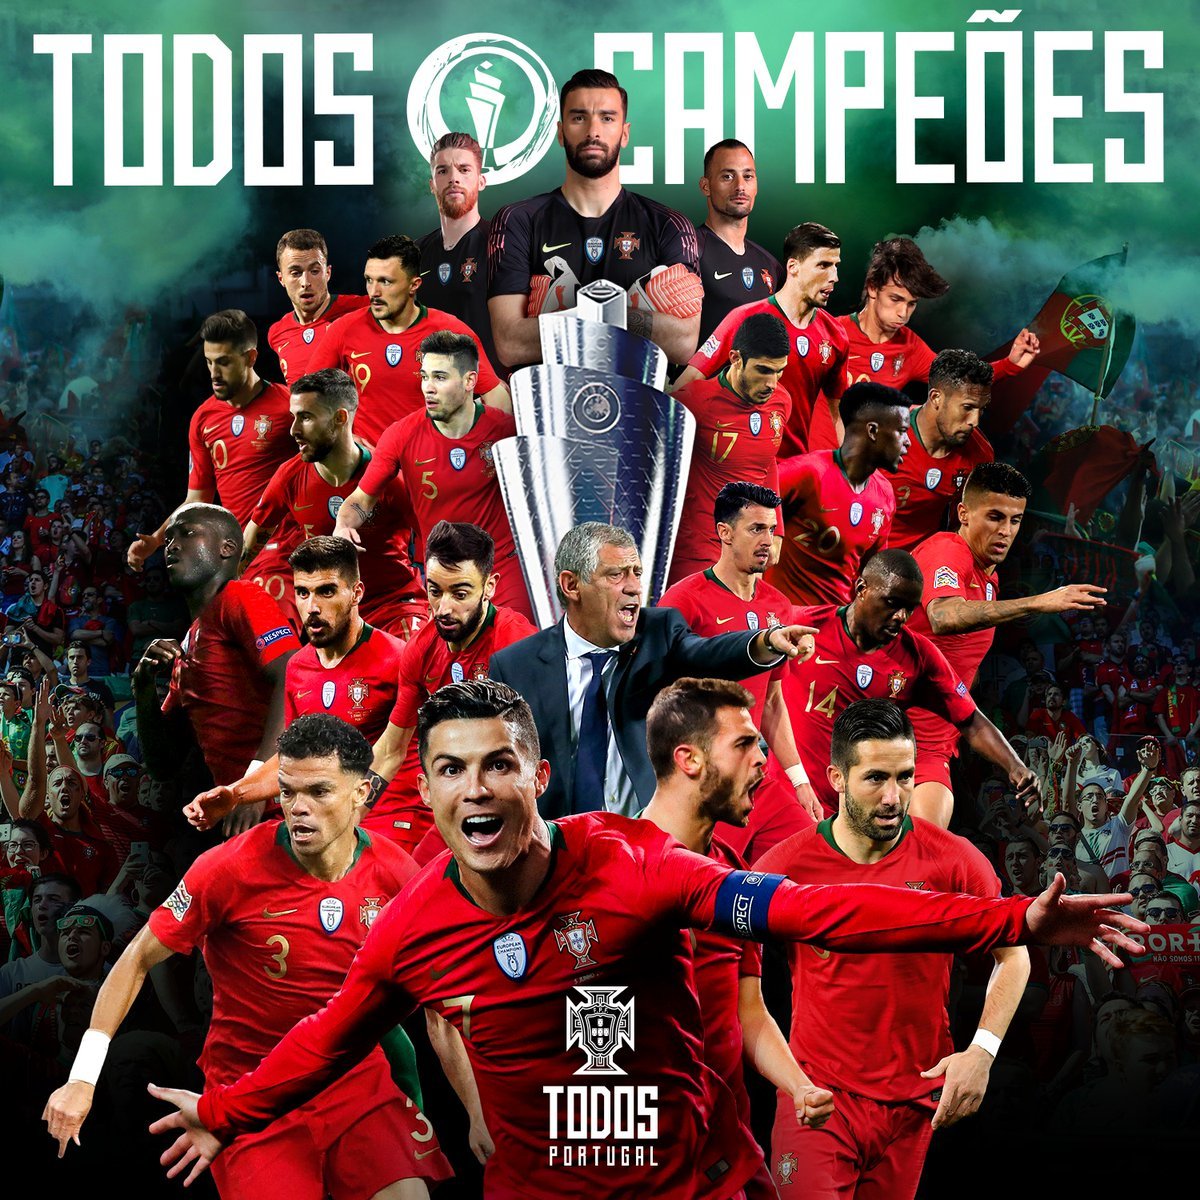 Đội tuyển Bồ Đào Nha đã giành chiến thắng tuyệt vời tại Nations League, và không ai khác ngoài Cristiano Ronaldo đã chứng tỏ được vai trò quan trọng trong thành công này. Hãy xem hình ảnh này để chiêm ngưỡng những khoảnh khắc đáng nhớ trong chiến tích của đội tuyển.